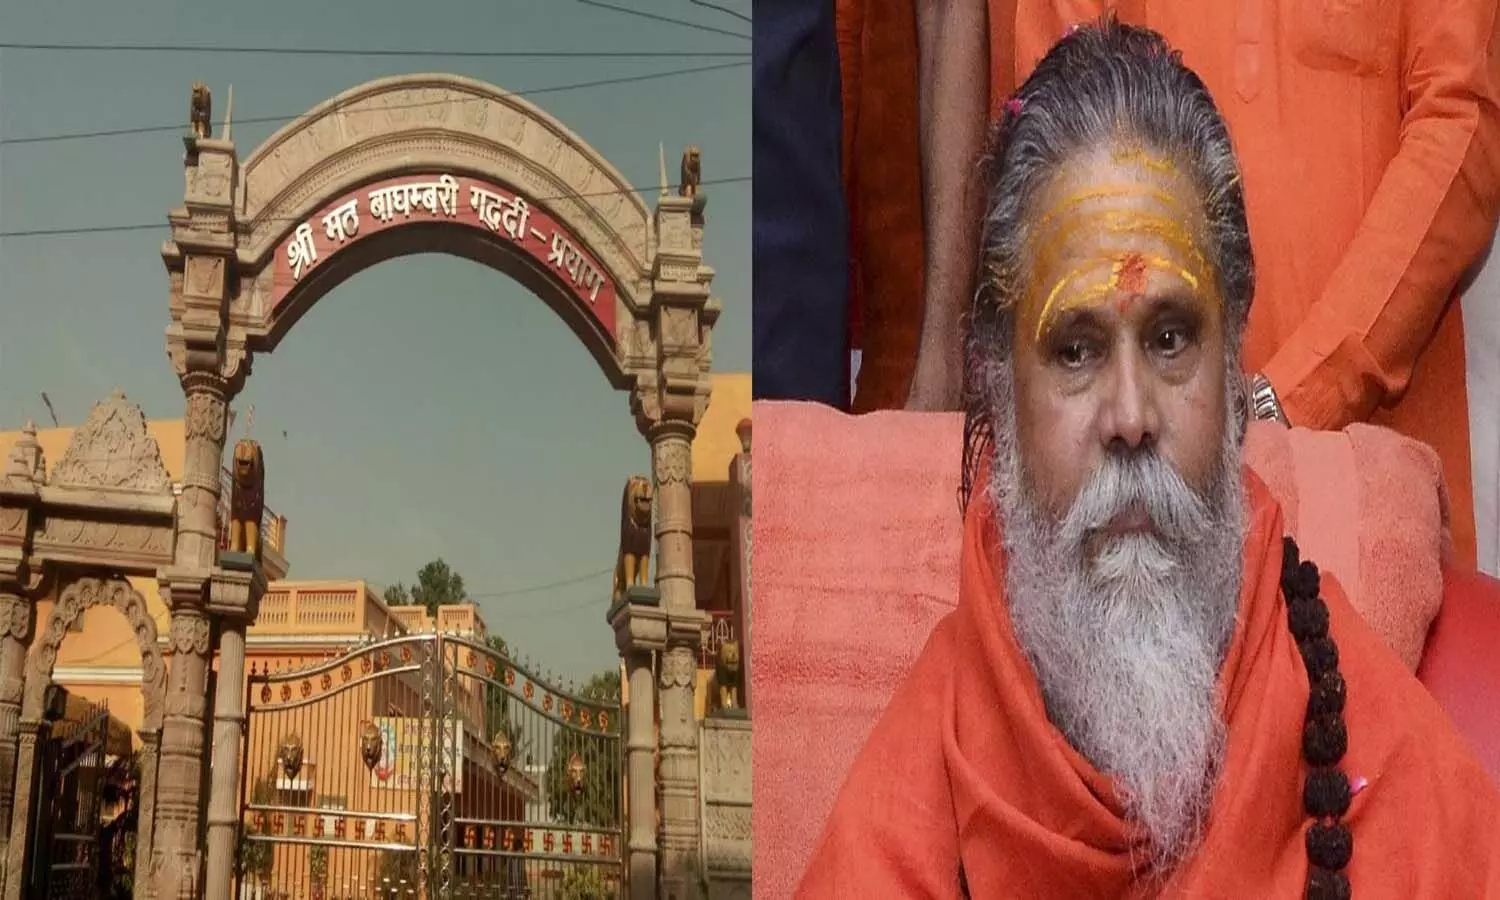 Lucknow News: अखाड़ा परिषद के गठन के बाद भी नहीं रुक रहीं साधु-संतों की  हत्याएं, मायाजाल में फंसे अखाड़े-मठ